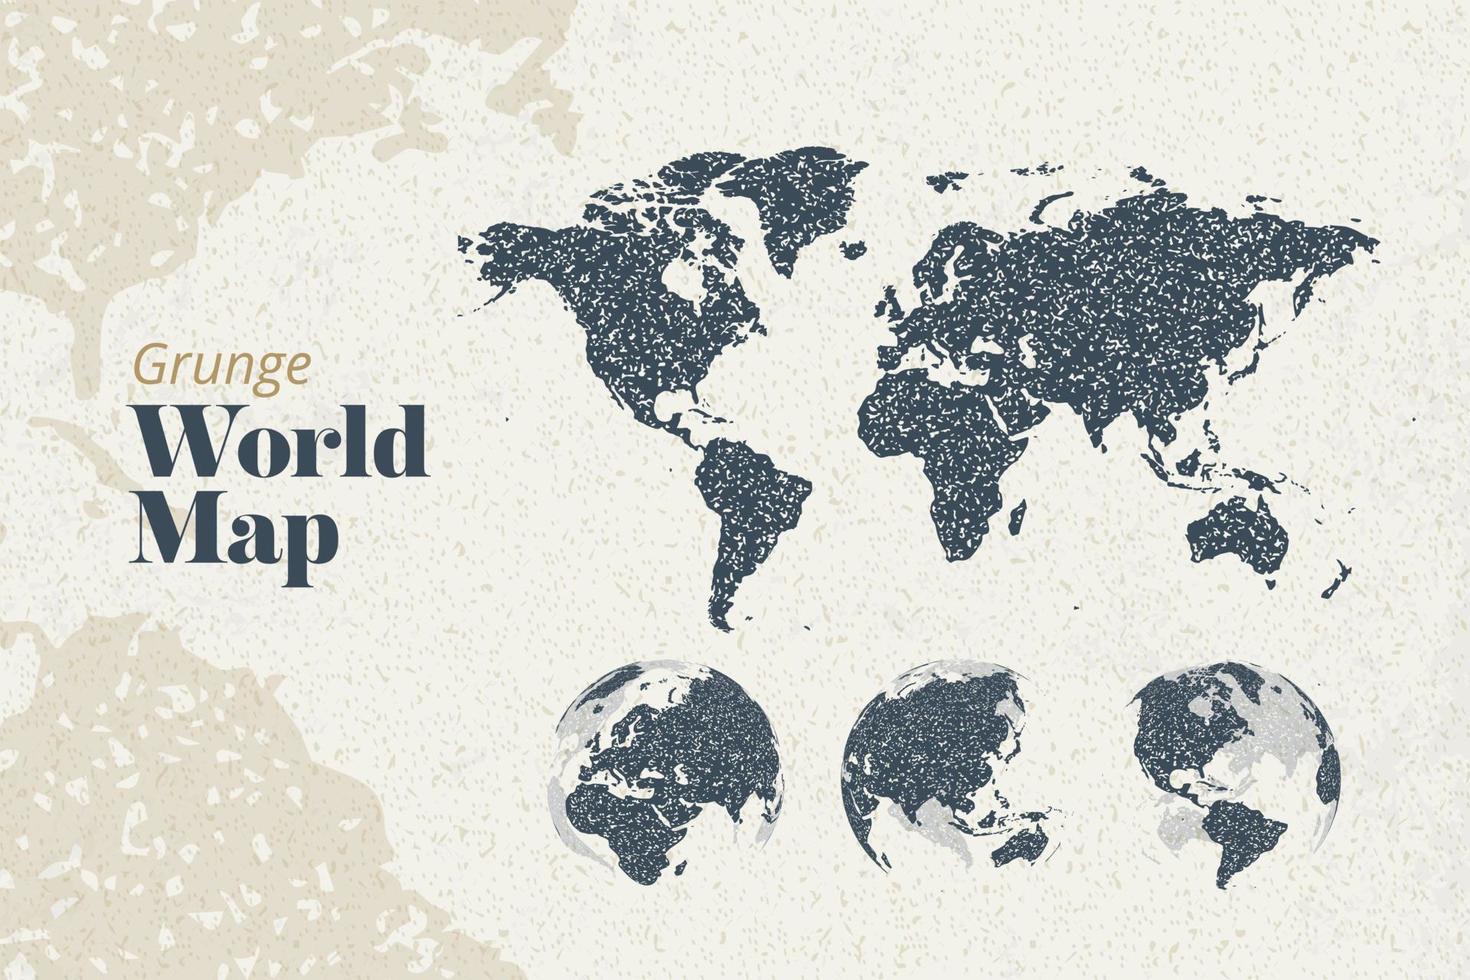 mappa del mondo grunge e globi della terra che mostrano tutti i continenti. modello di illustrazione vettoriale per web design, relazioni annuali, infografica, presentazione aziendale, marketing, viaggi e turismo.